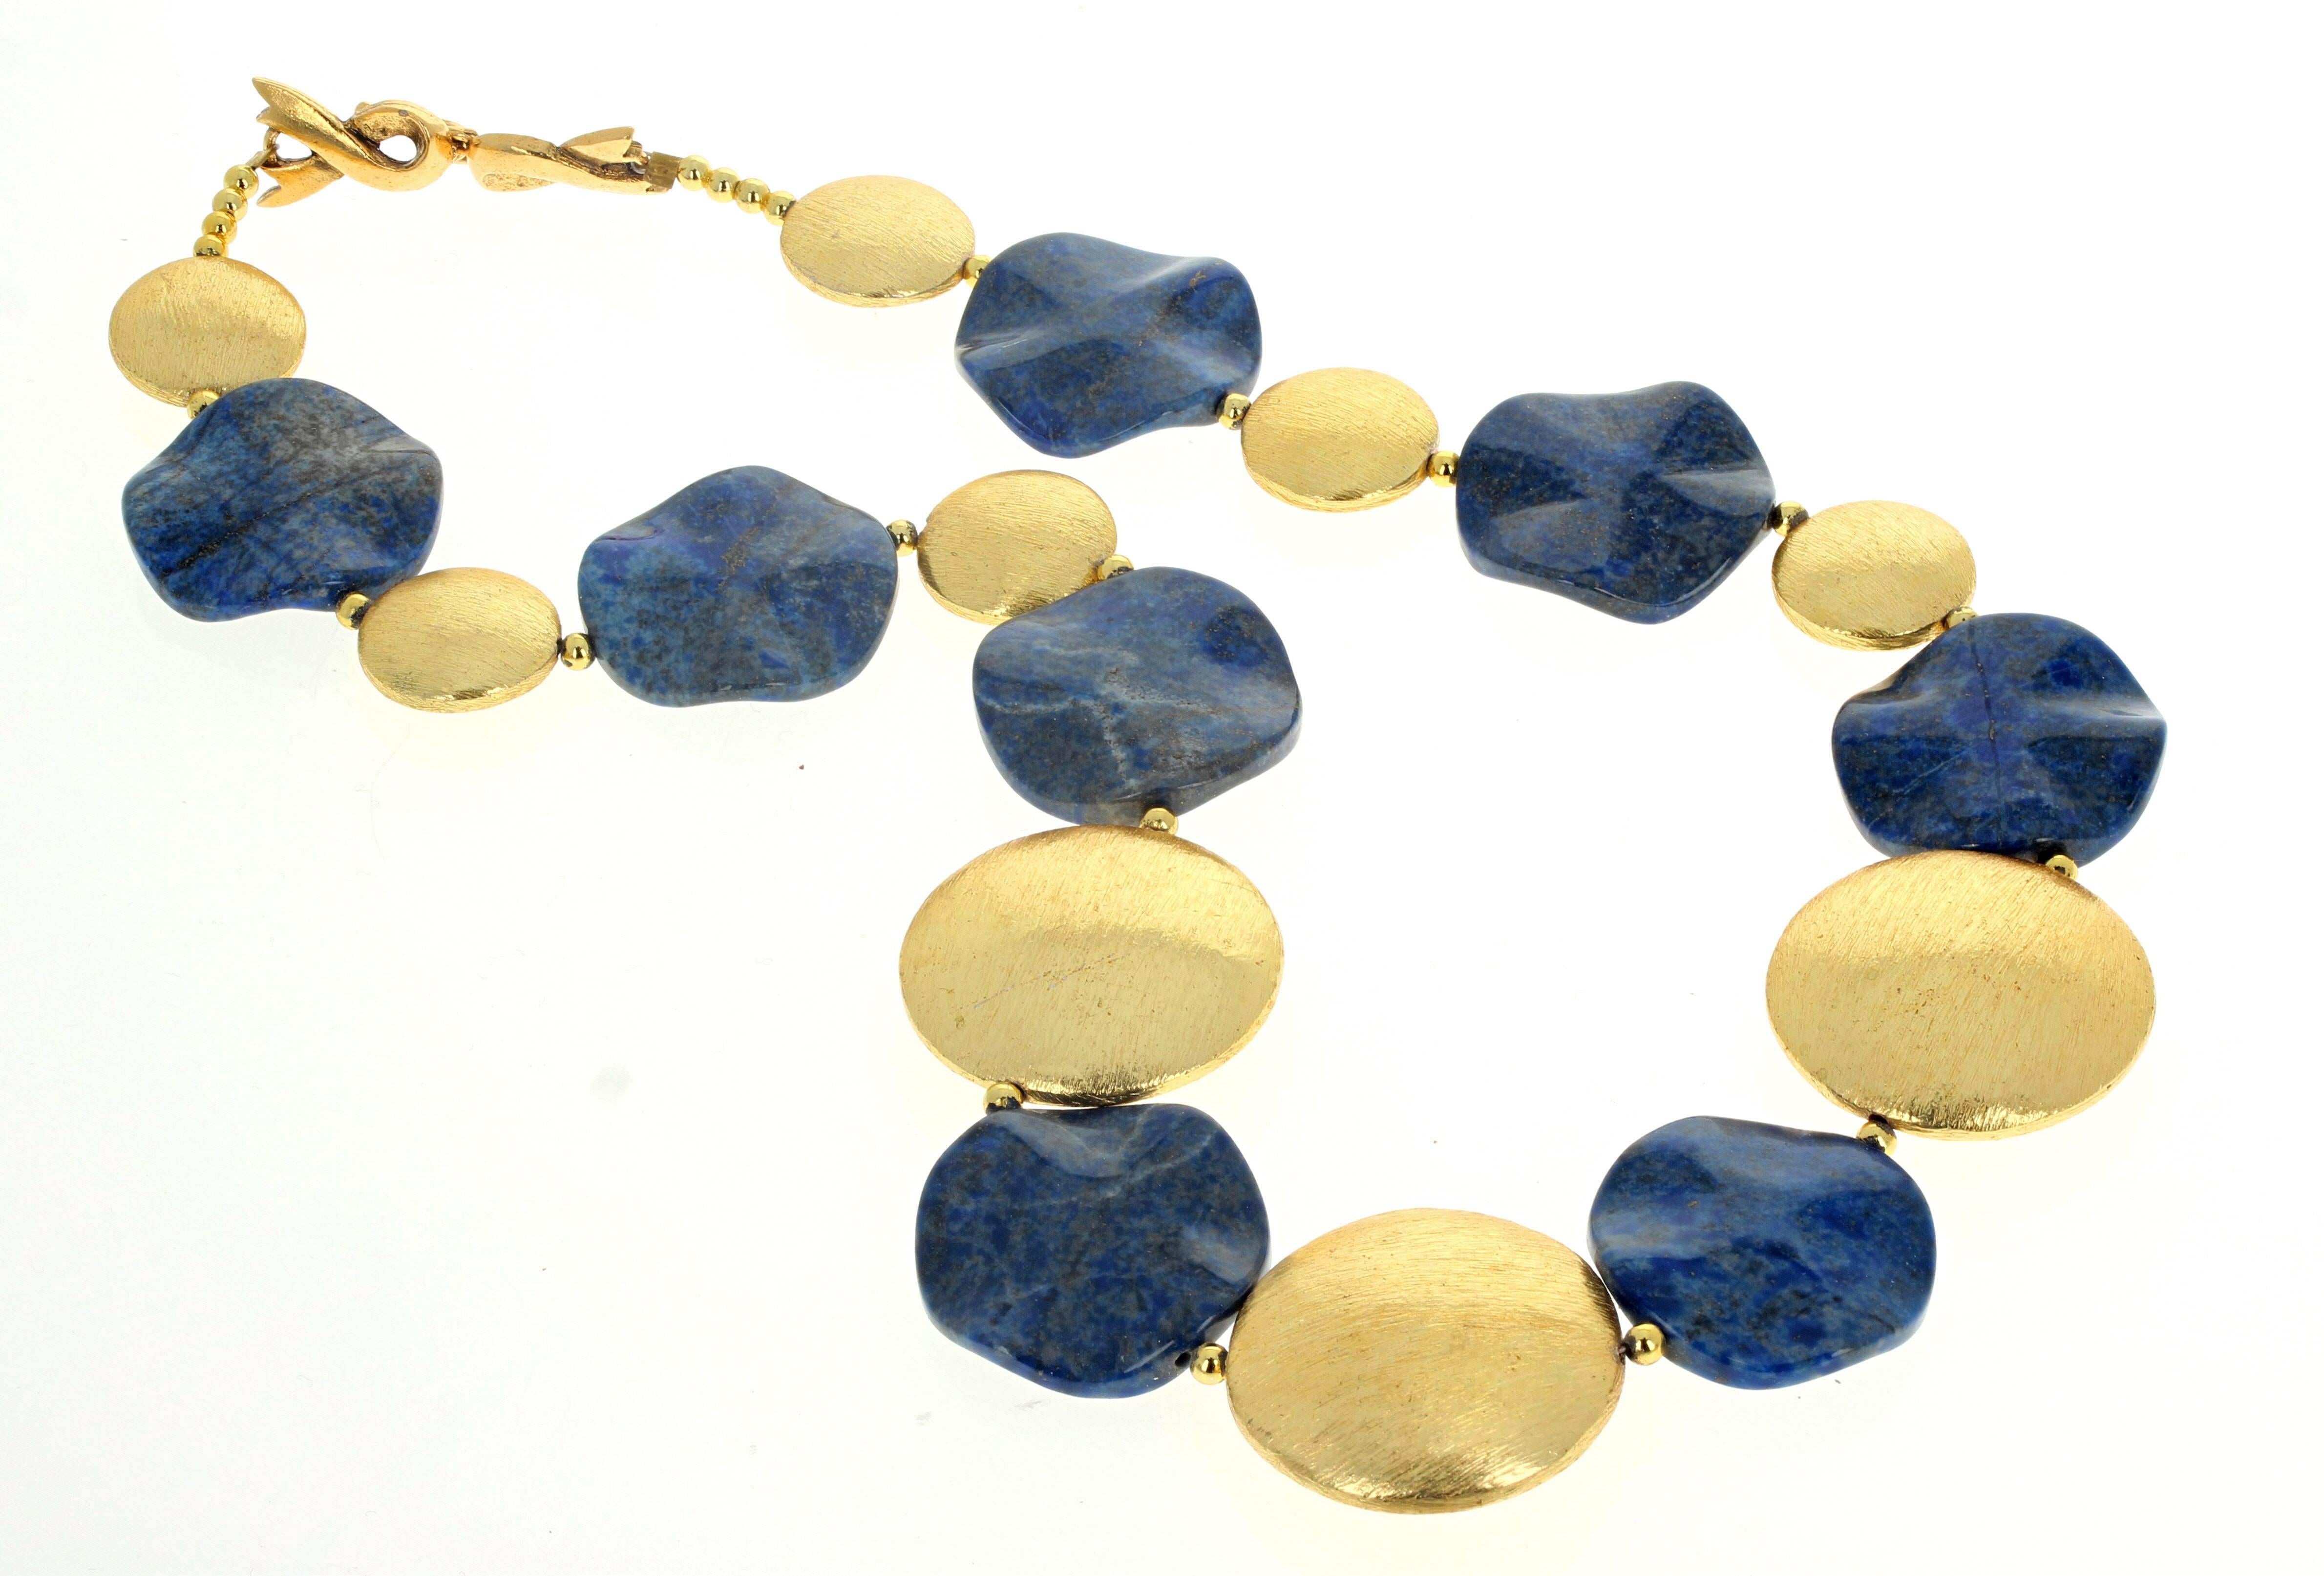 Ces magnifiques rondelles de lapis-lazuli naturel taillées et polies (environ 20 mm) se balancent joyeusement entre les rondelles plaquées or (les plus grandes mesurent 28 mm) de ce fascinant collier.  Le fermoir plaqué or est un fermoir à crochet